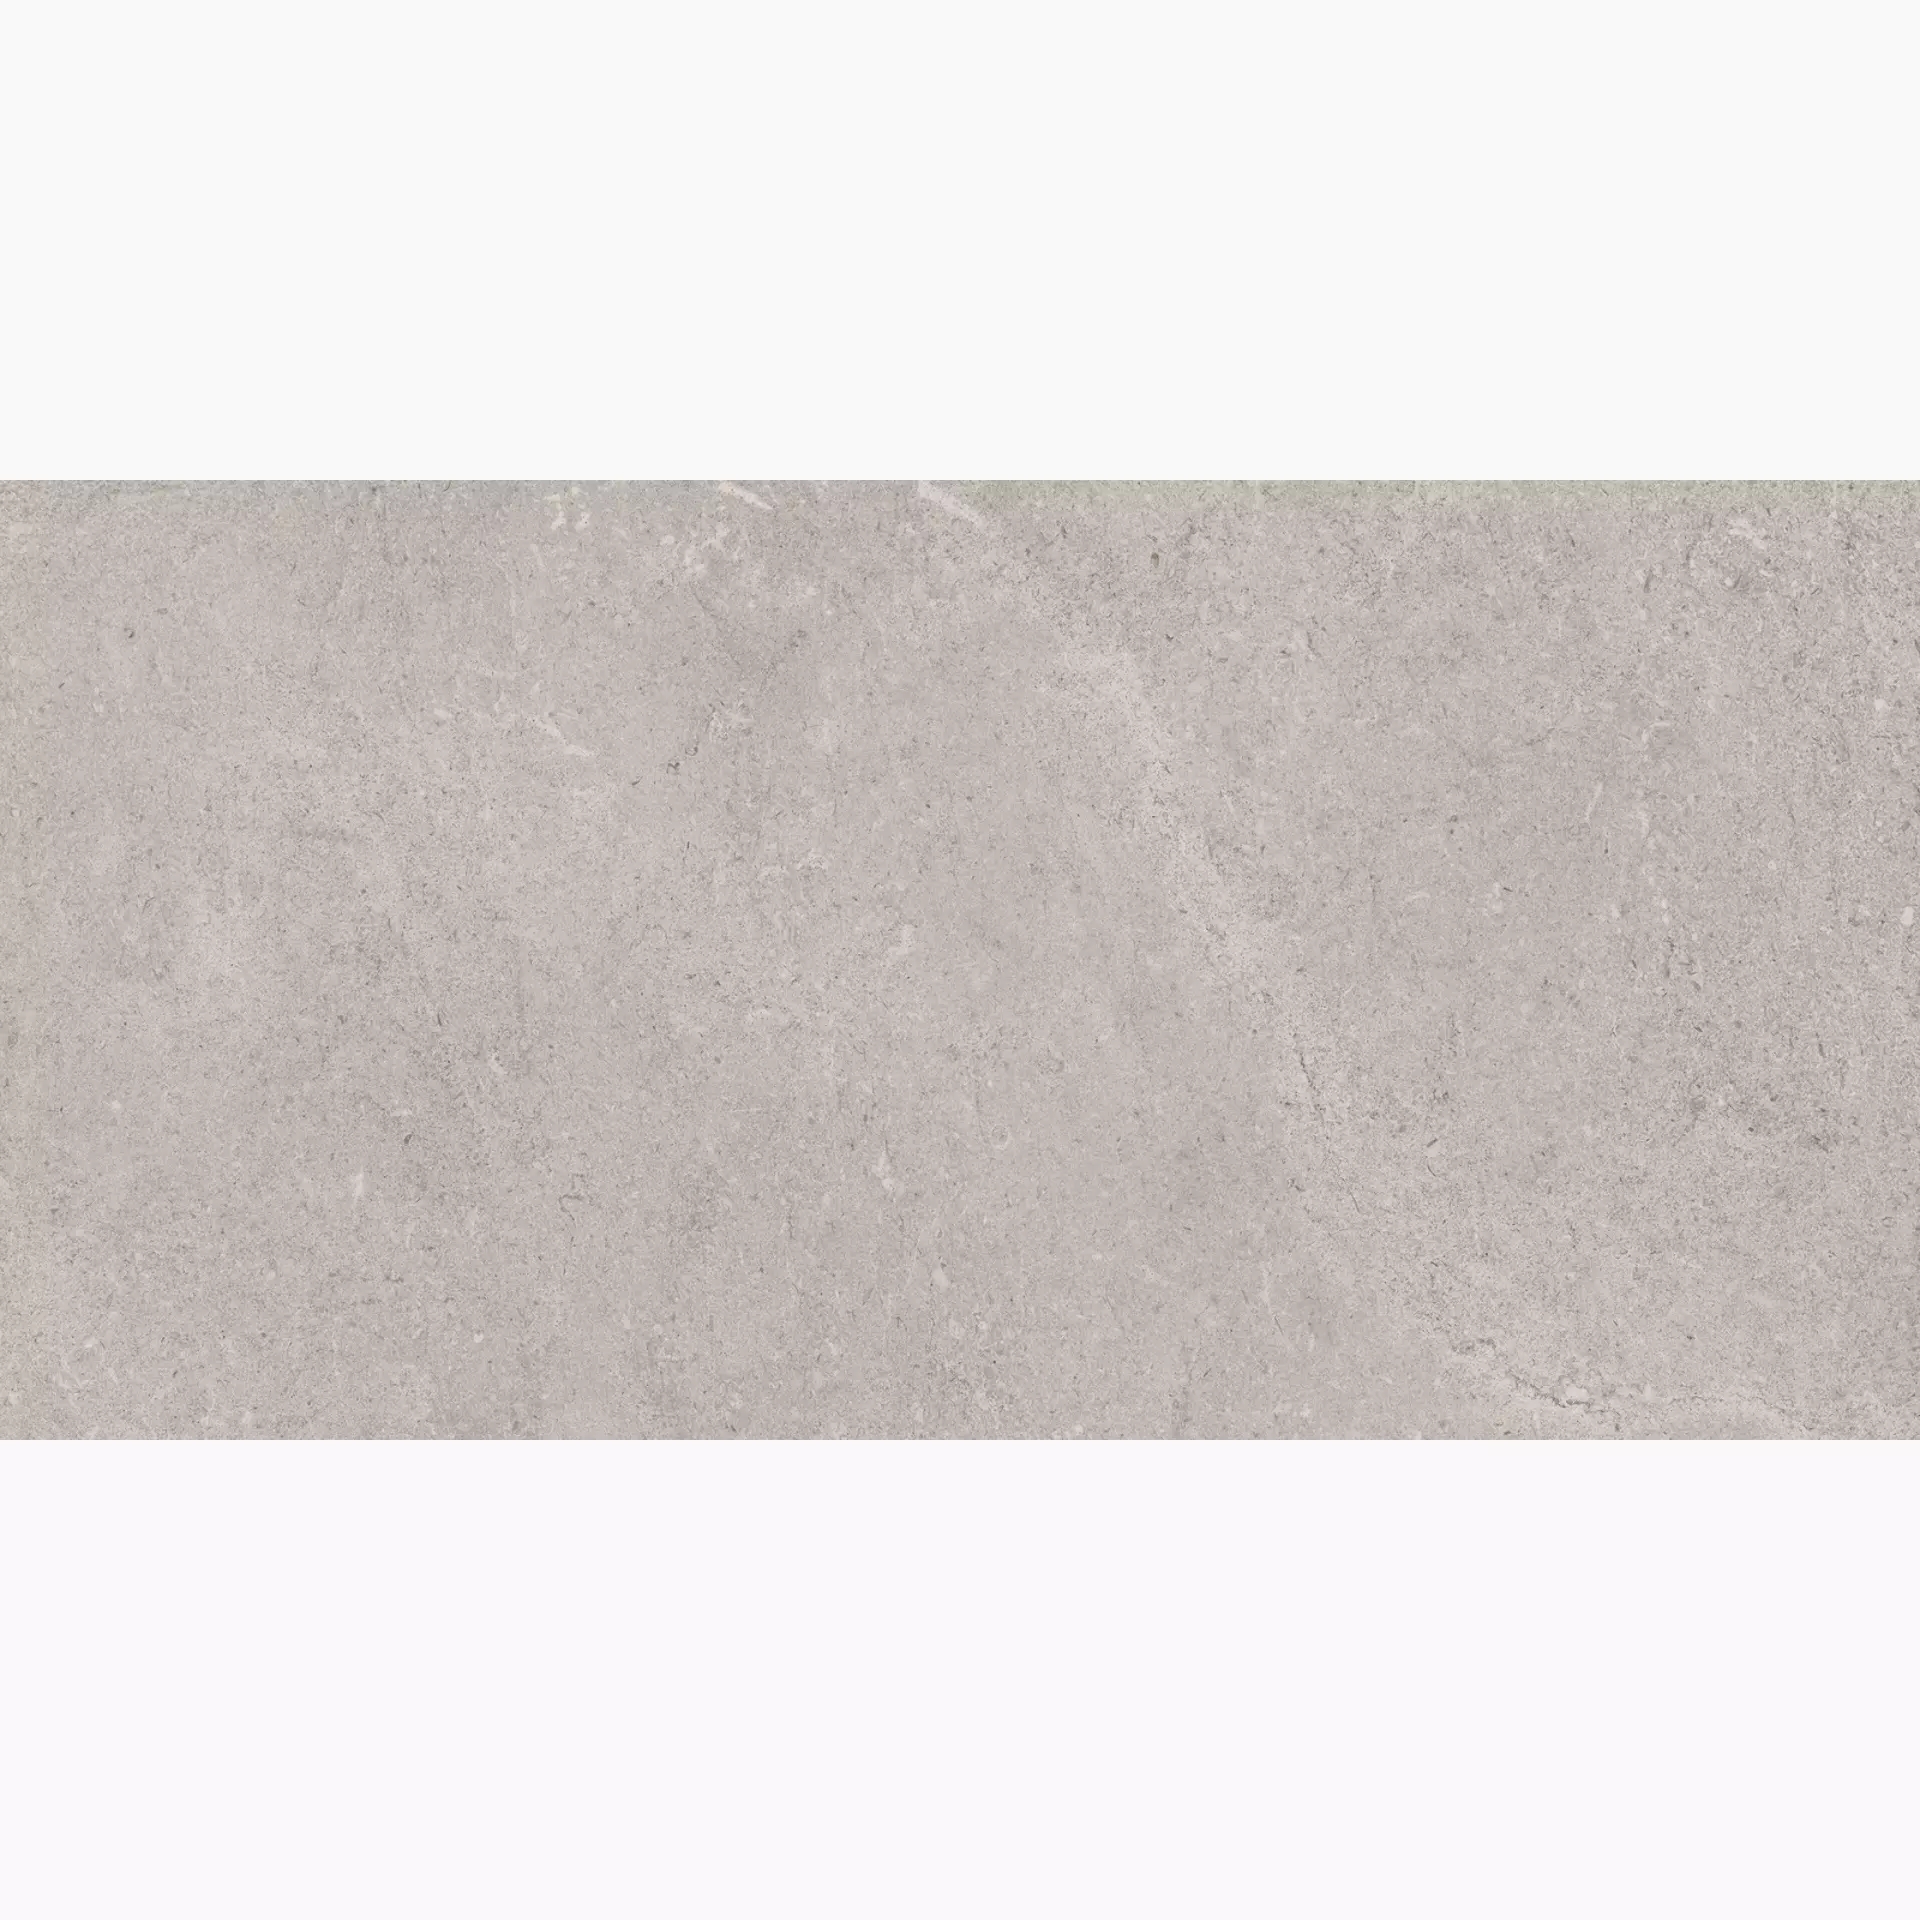 Marazzi Stream Grey Naturale – Matt M0UY 30x60cm rectified 8,5mm